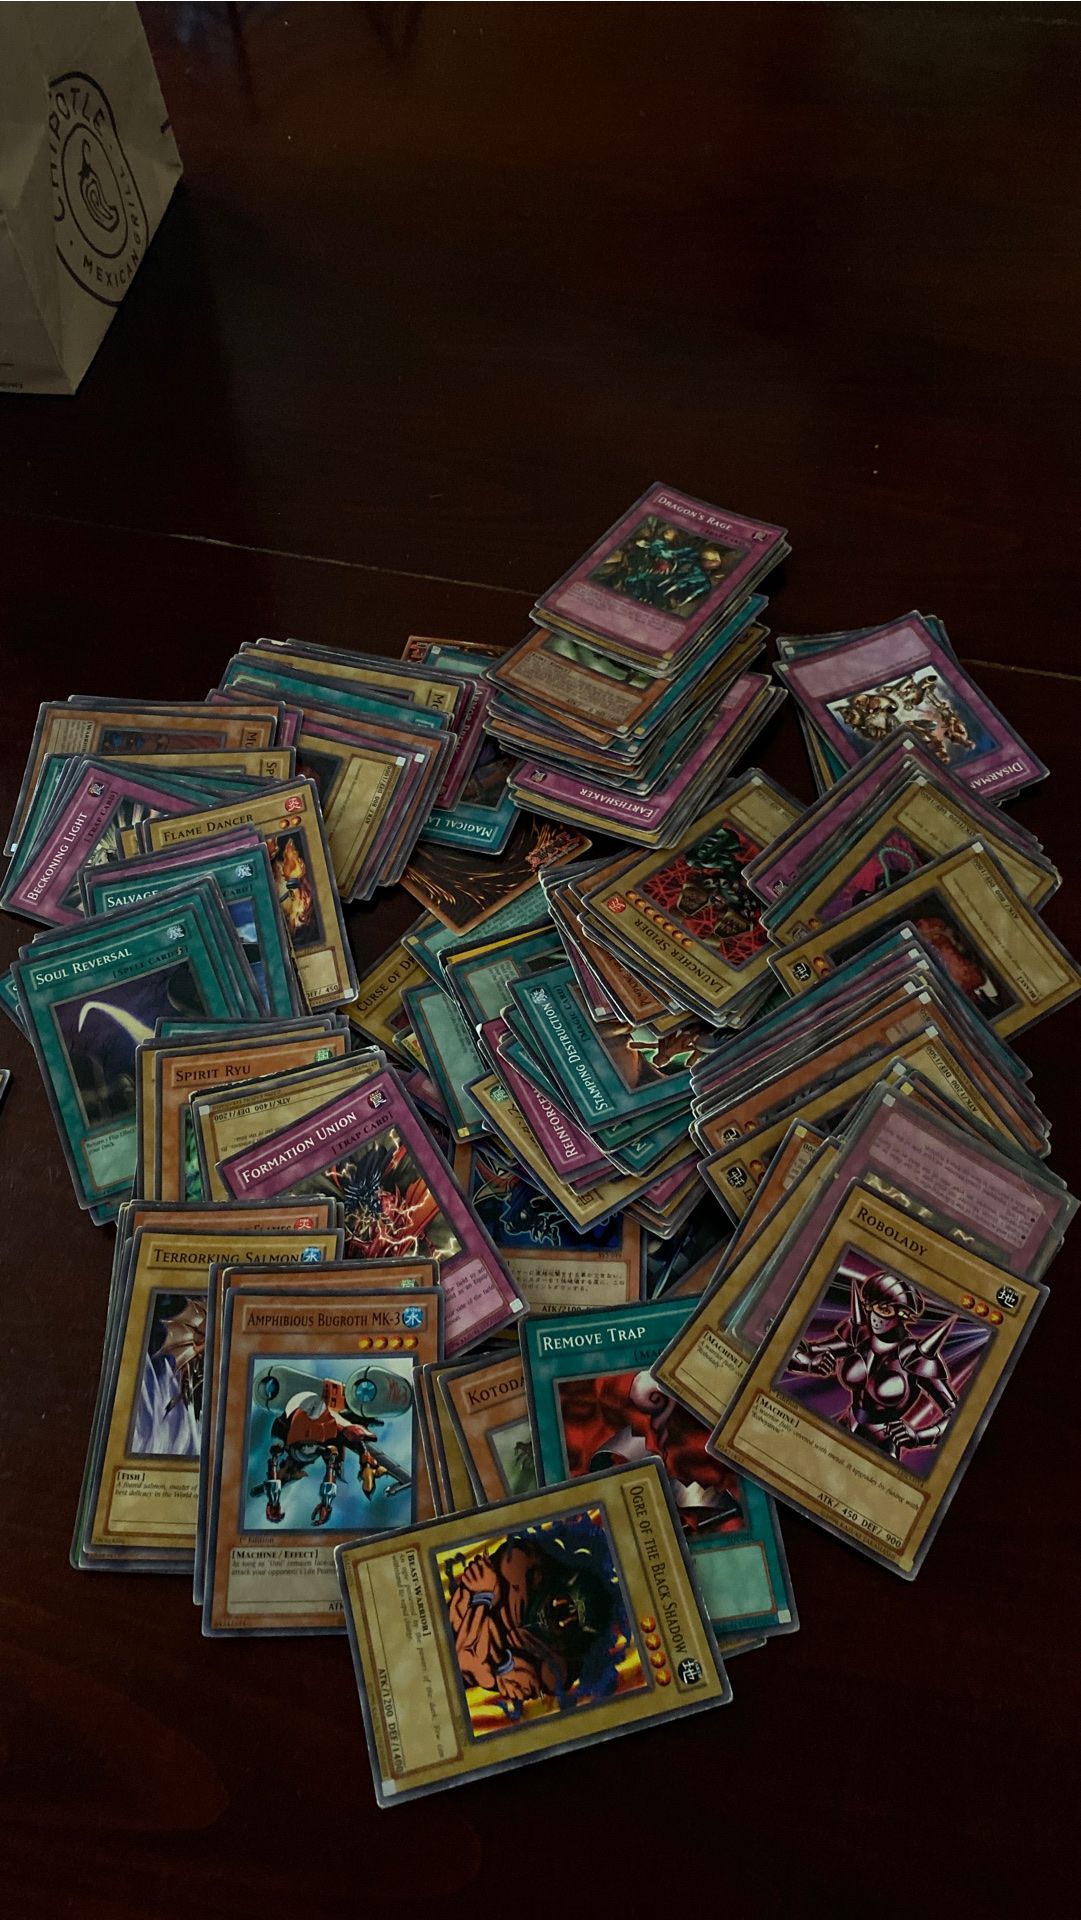 Yugioh cards